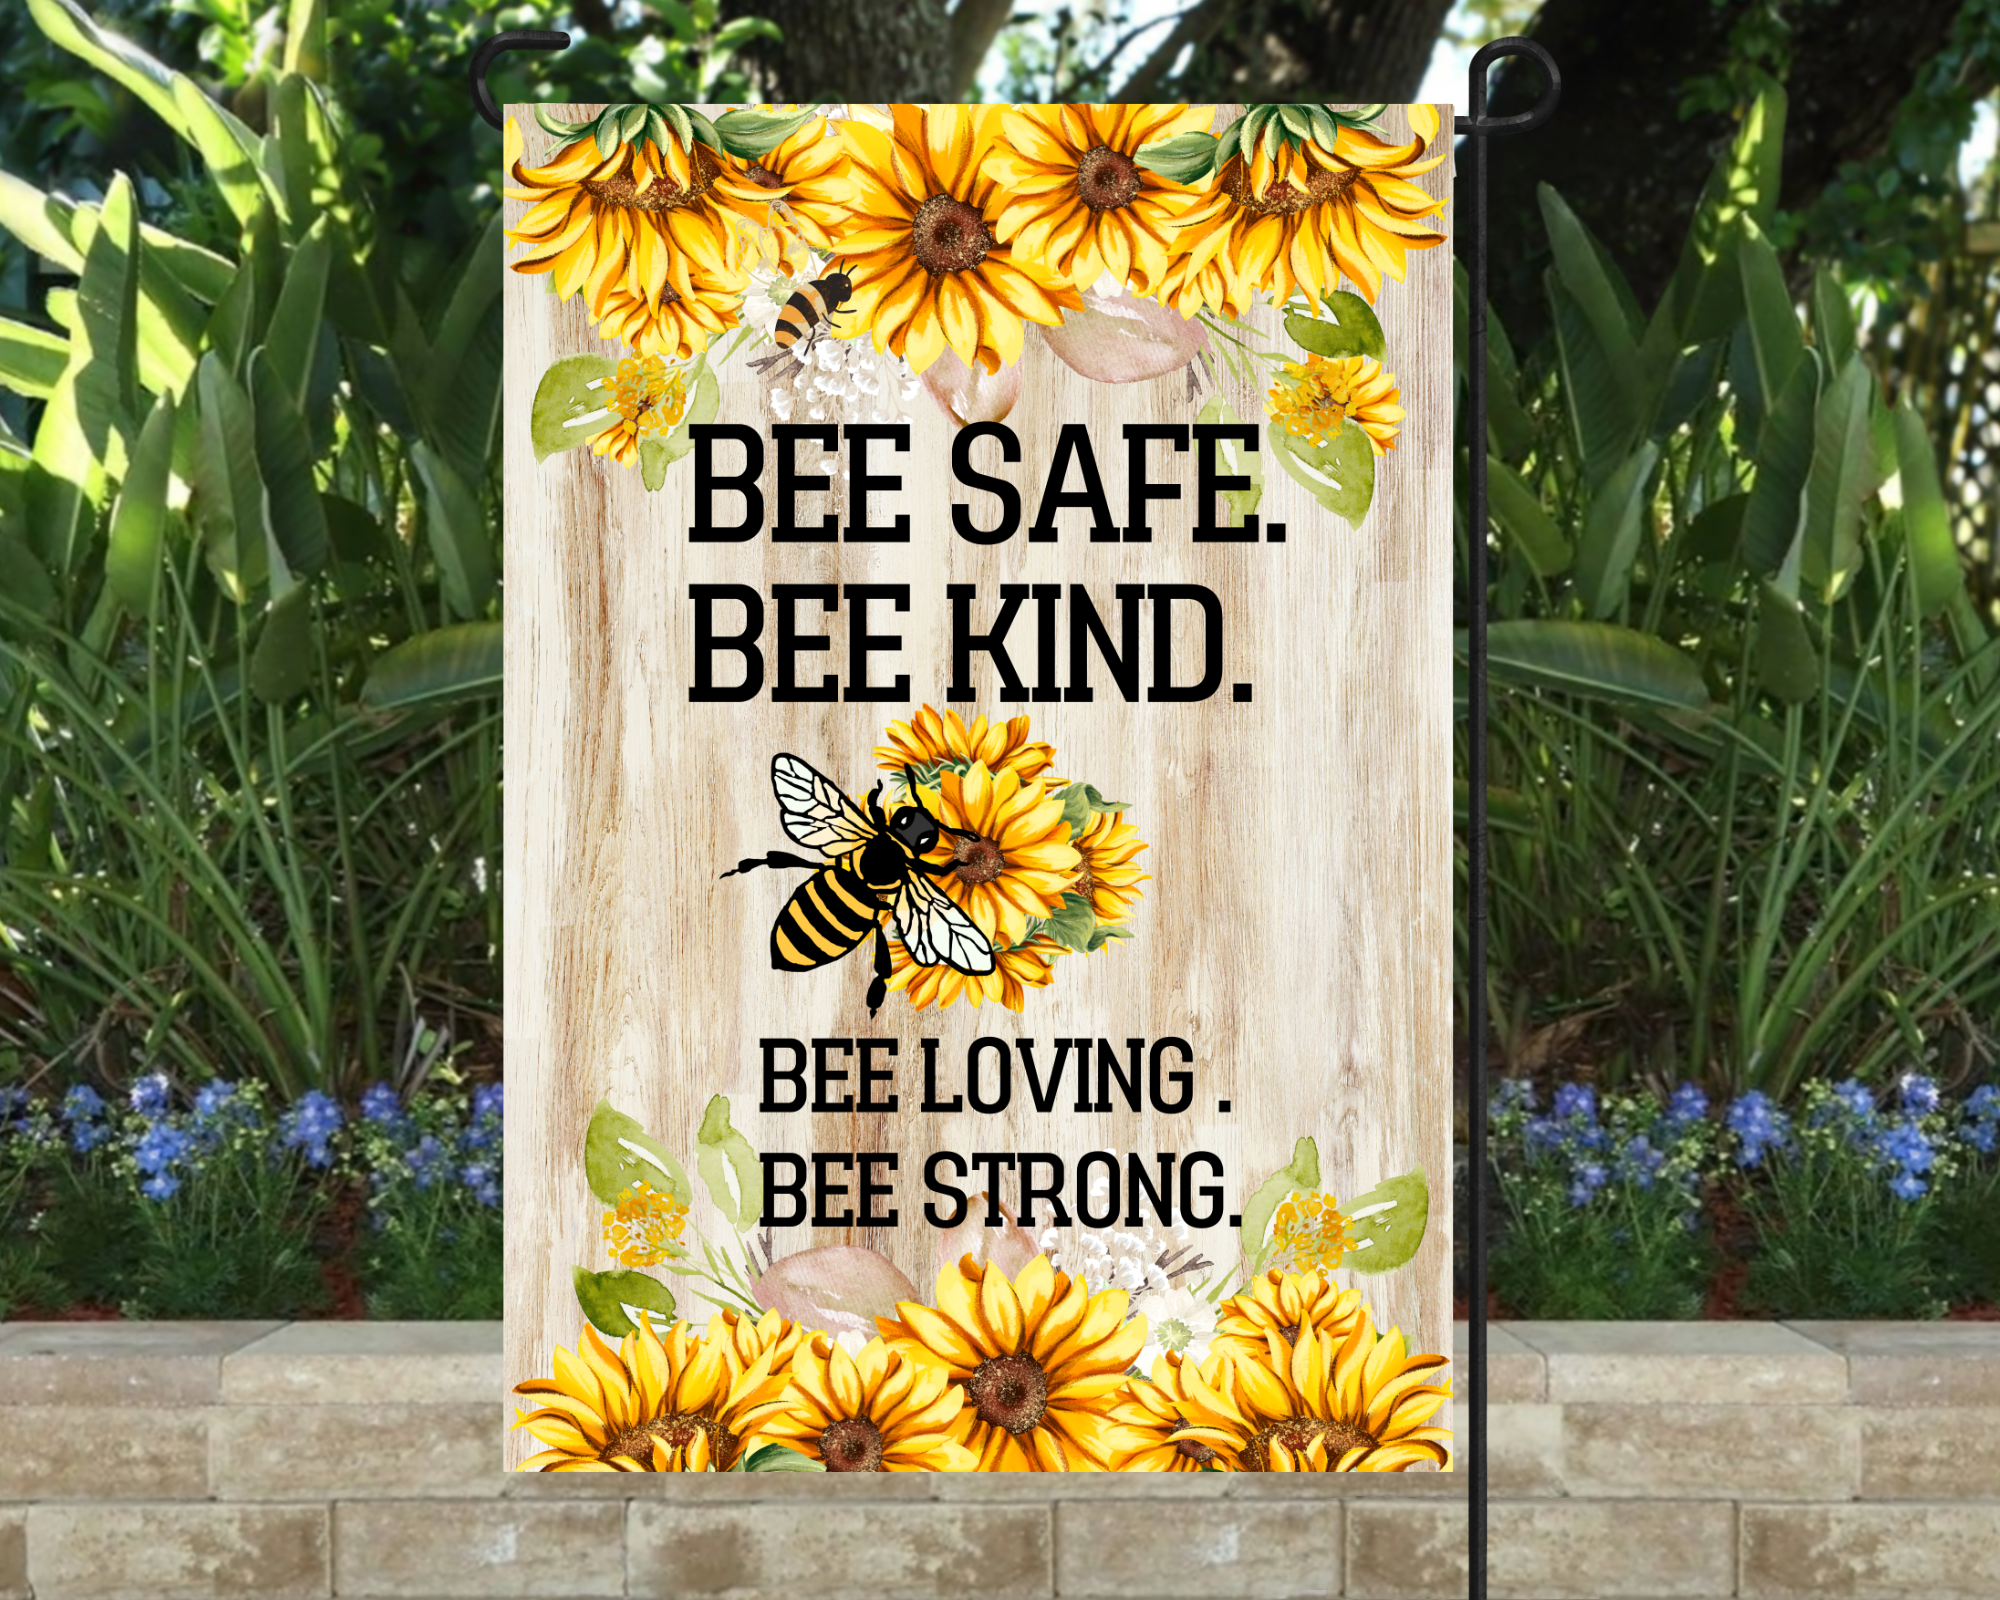 Bee Kind Garden Flag 12"x18"